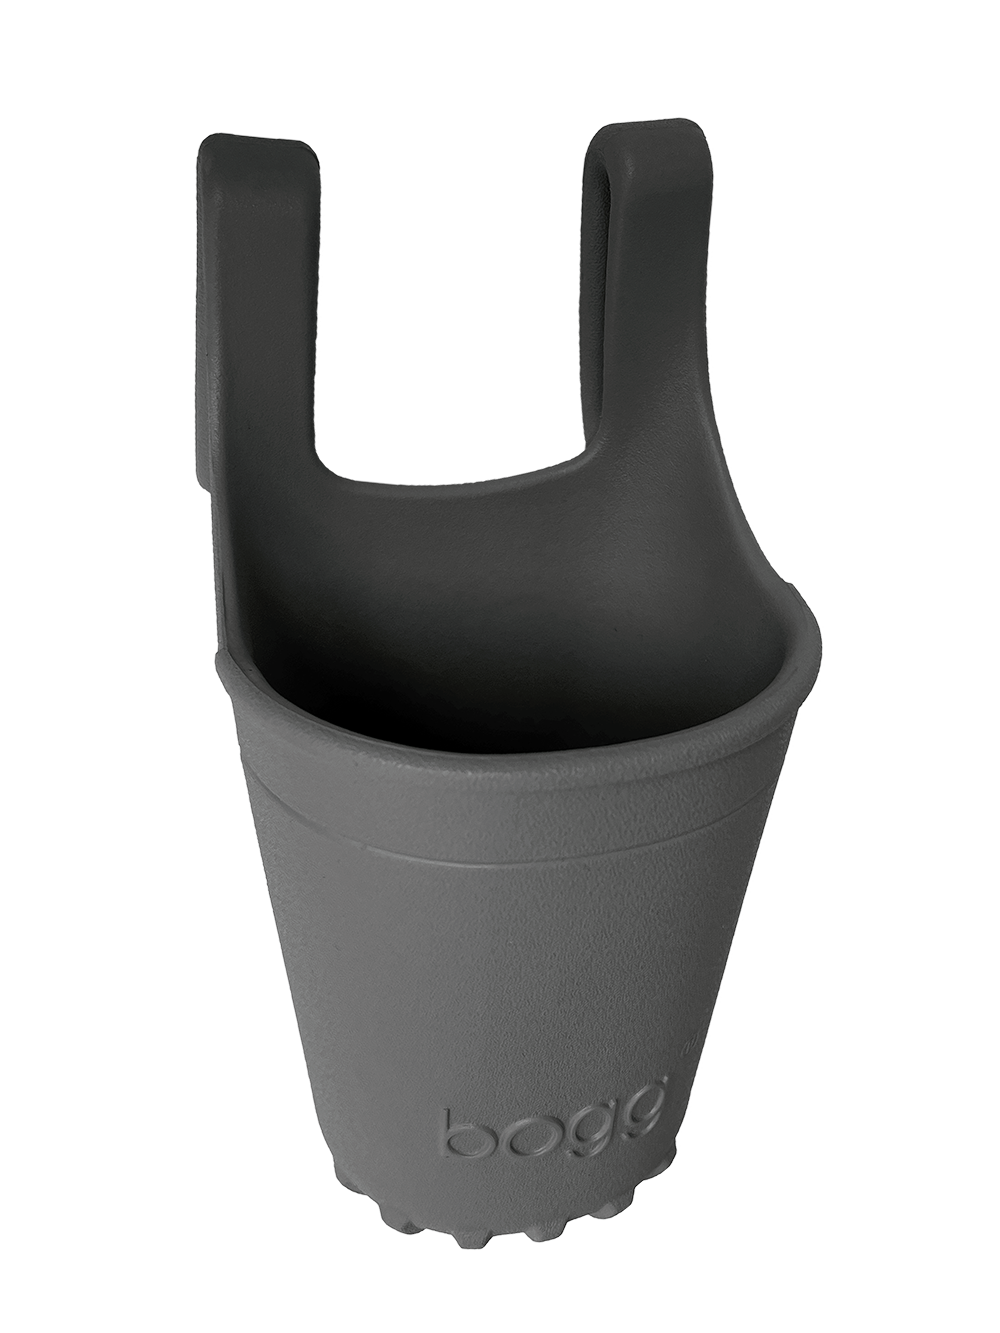 Fogg Bogg® Bevy Drink Holder - Image 1 - Bogg® Bag